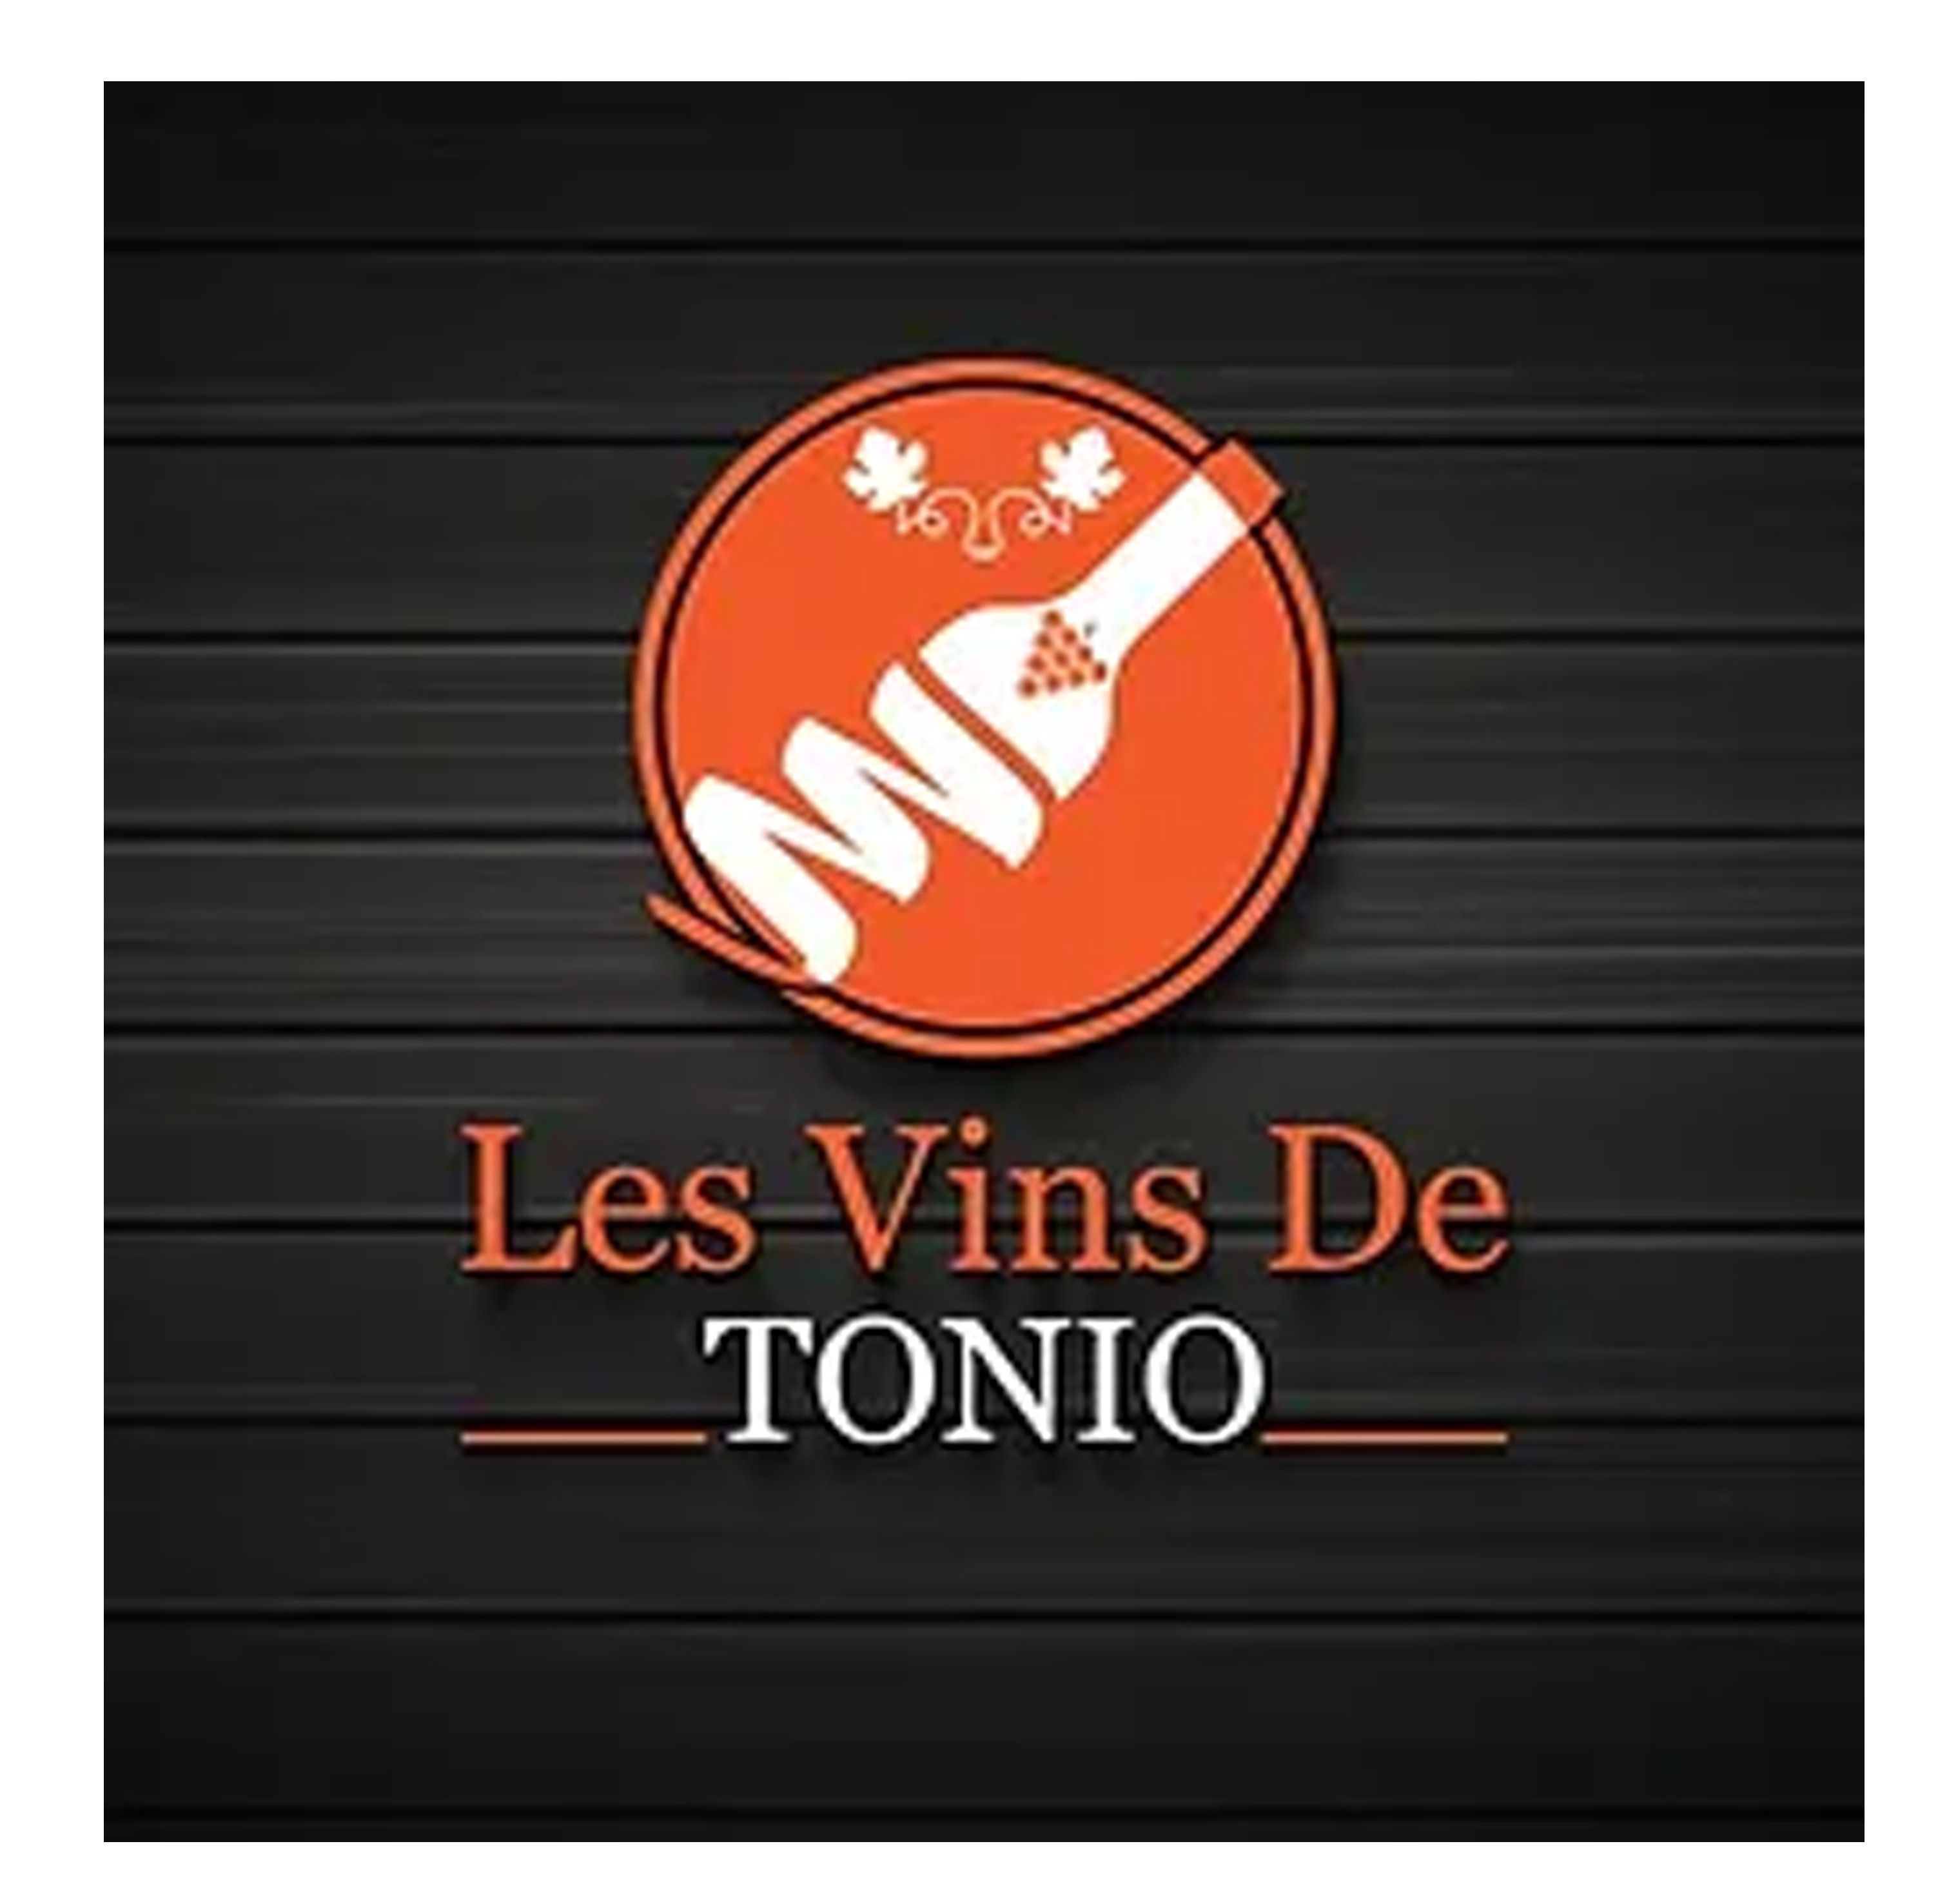 Les vins de Tonio